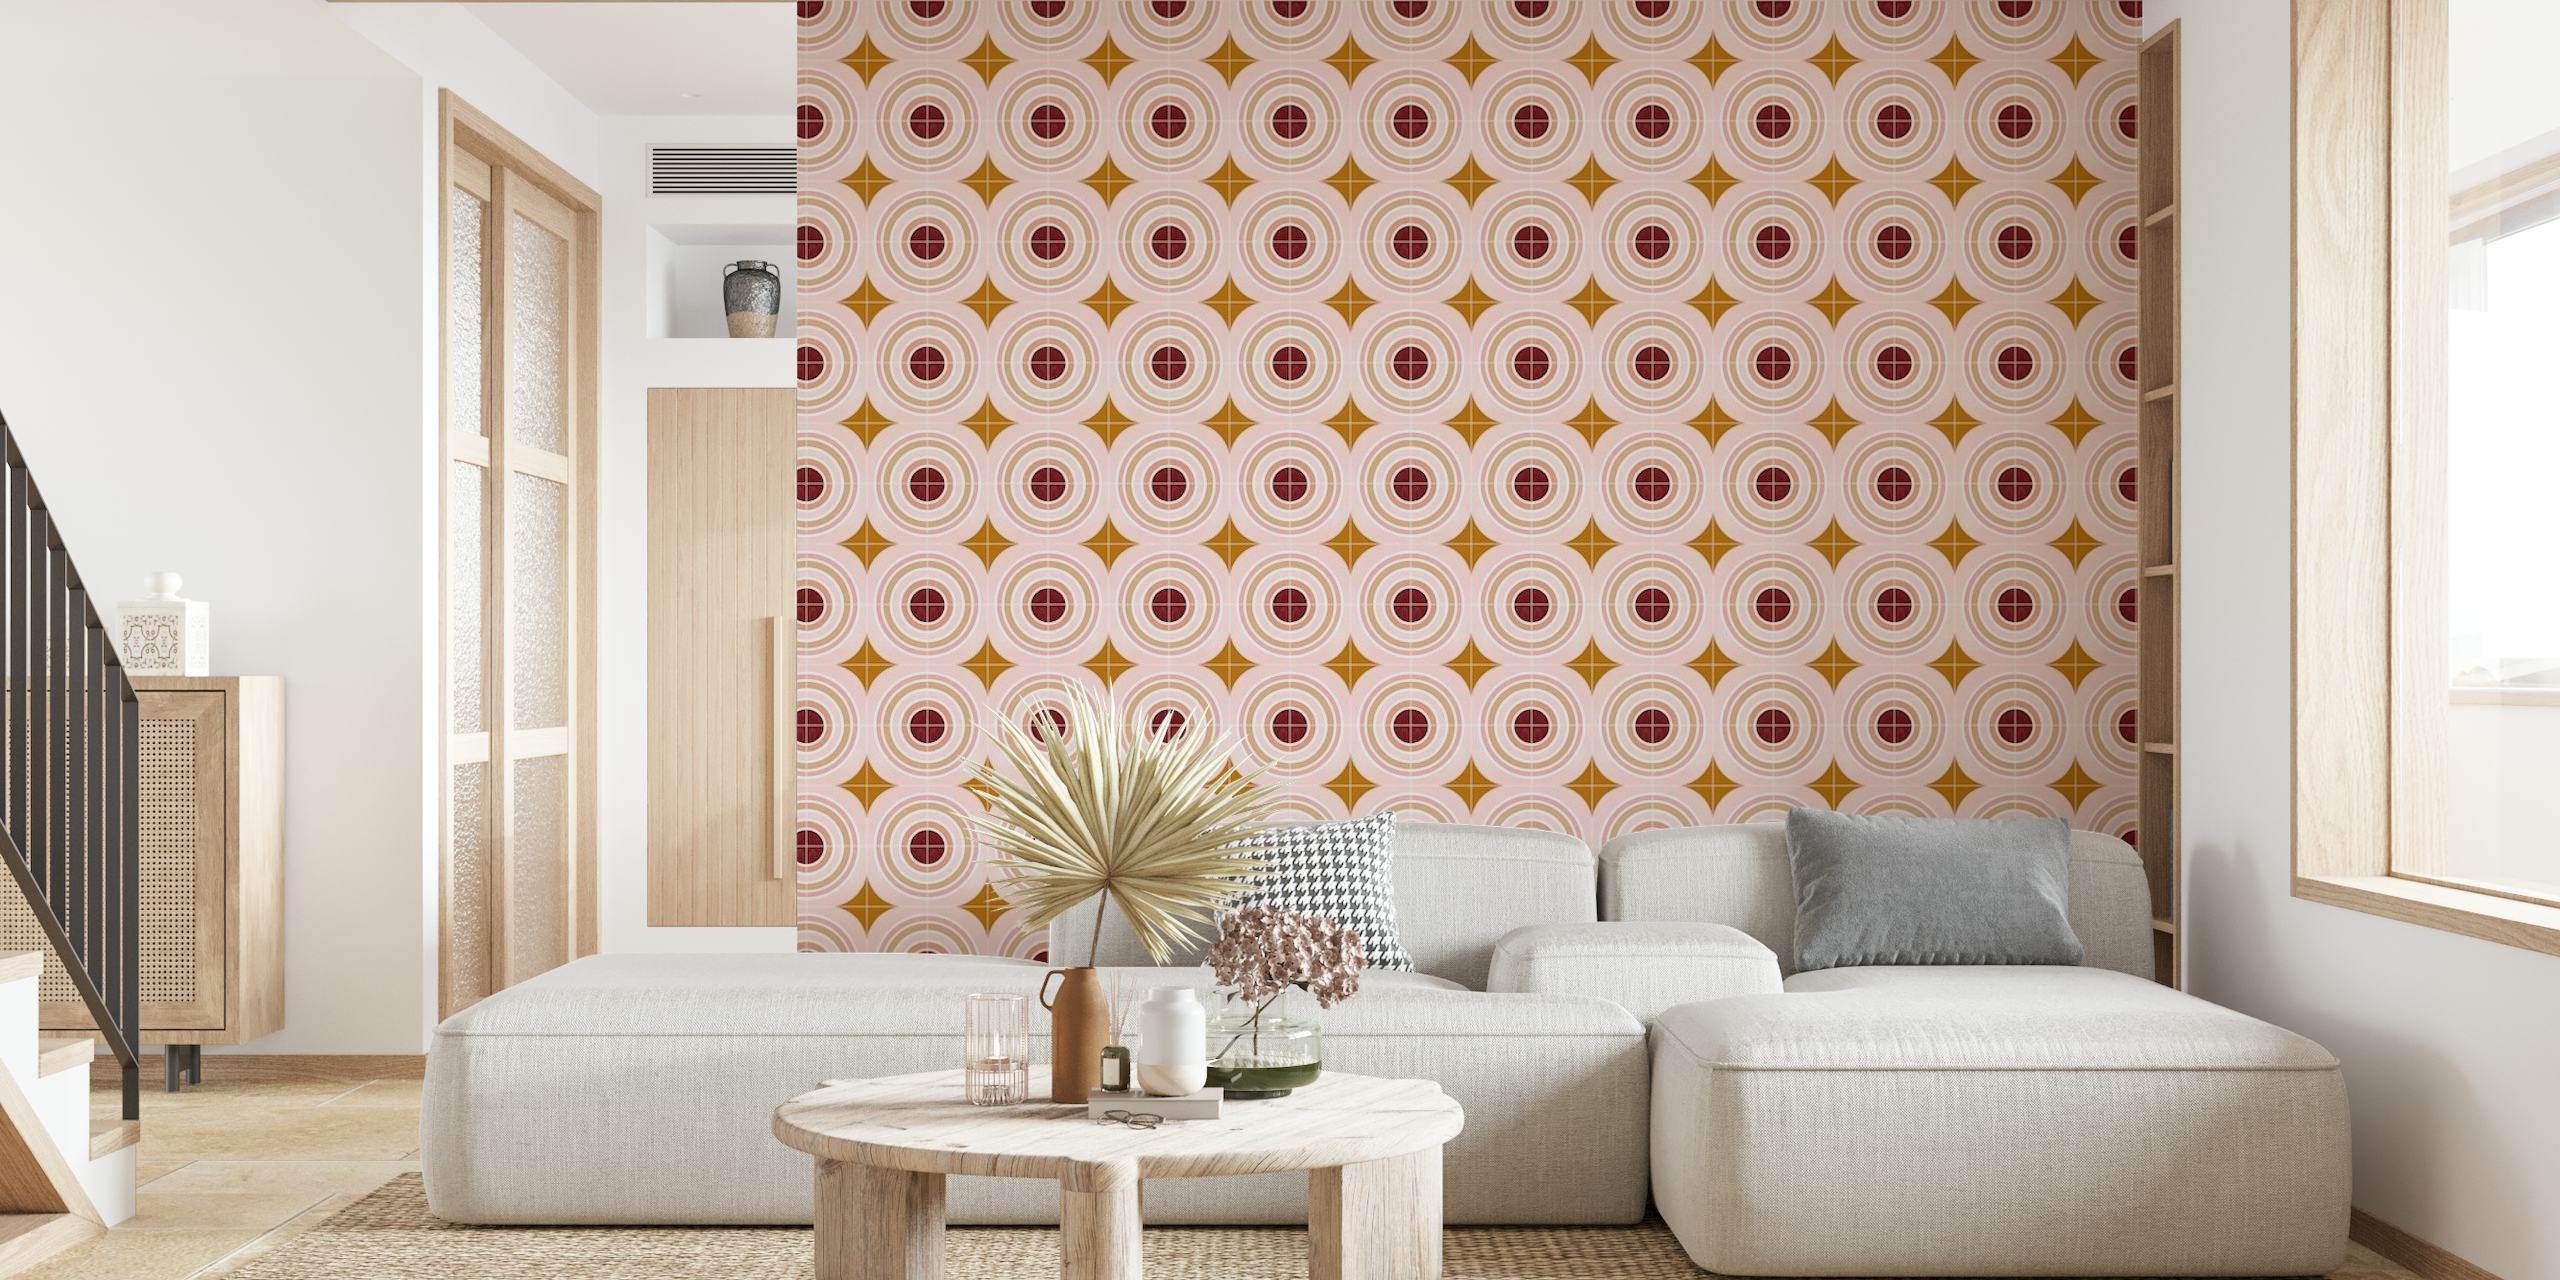 Papier peint Target Tiles présentant des motifs de cercles concentriques dans des teintes rose tendre et dorées